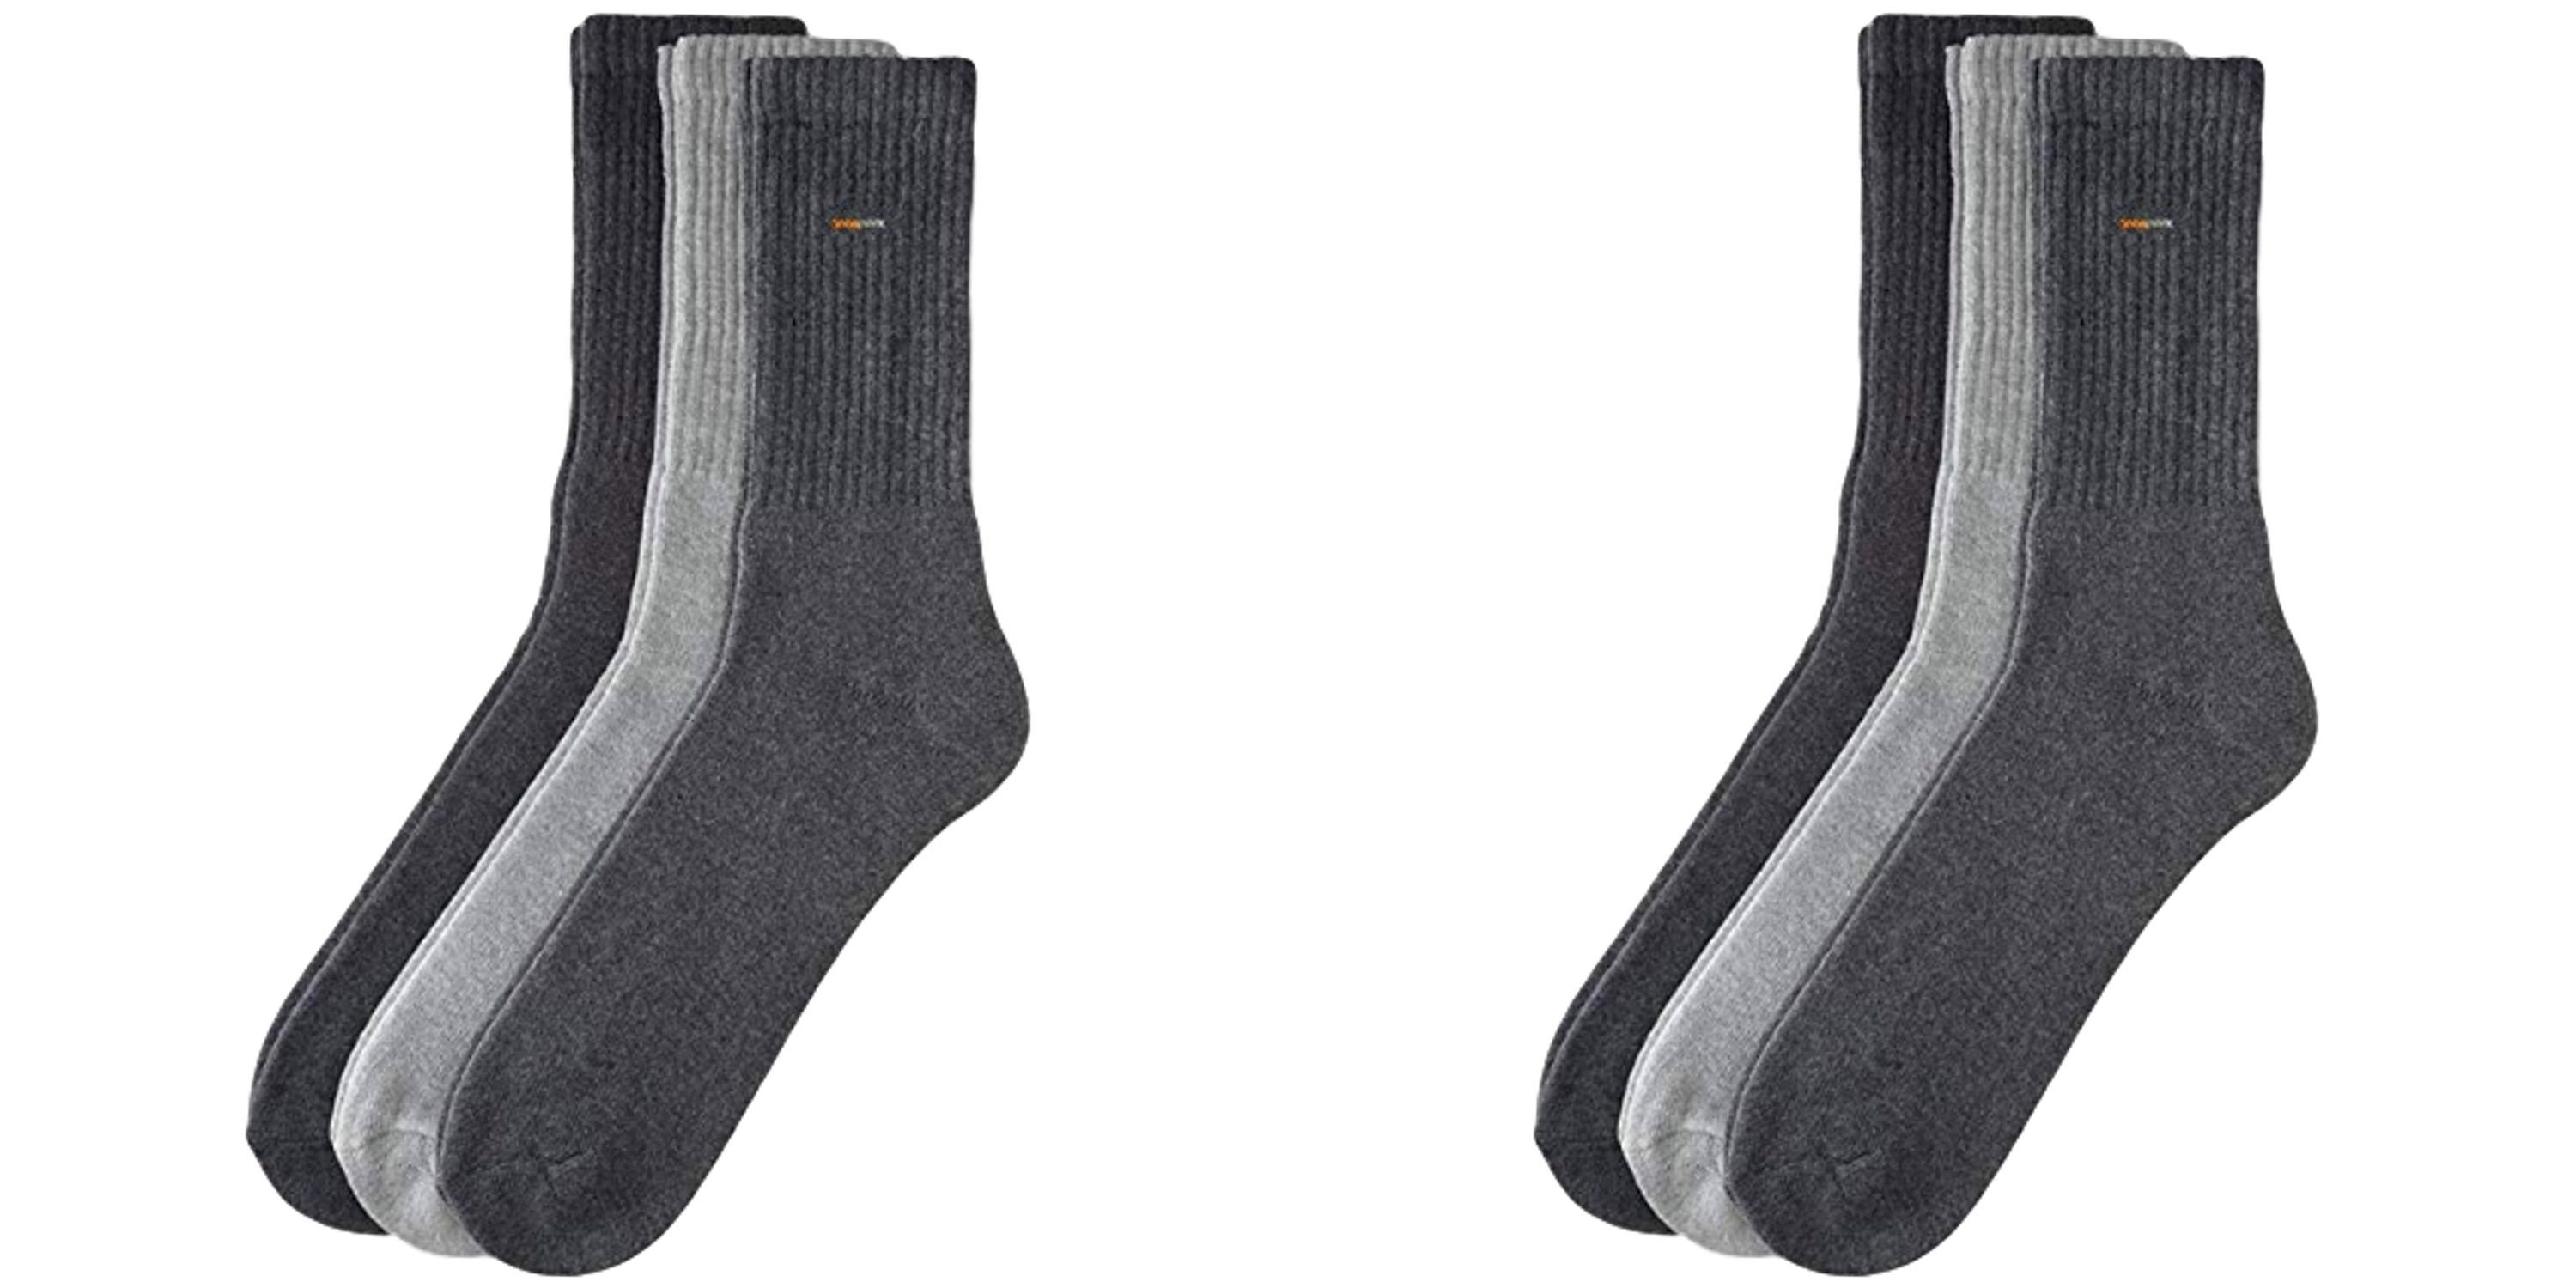 Camano Sportsocken Basic Socken Sportsocke (6-Paar) - Farbe: 6 Paar bunt - Größe: 35 - 38 A14 6 Paar bunt